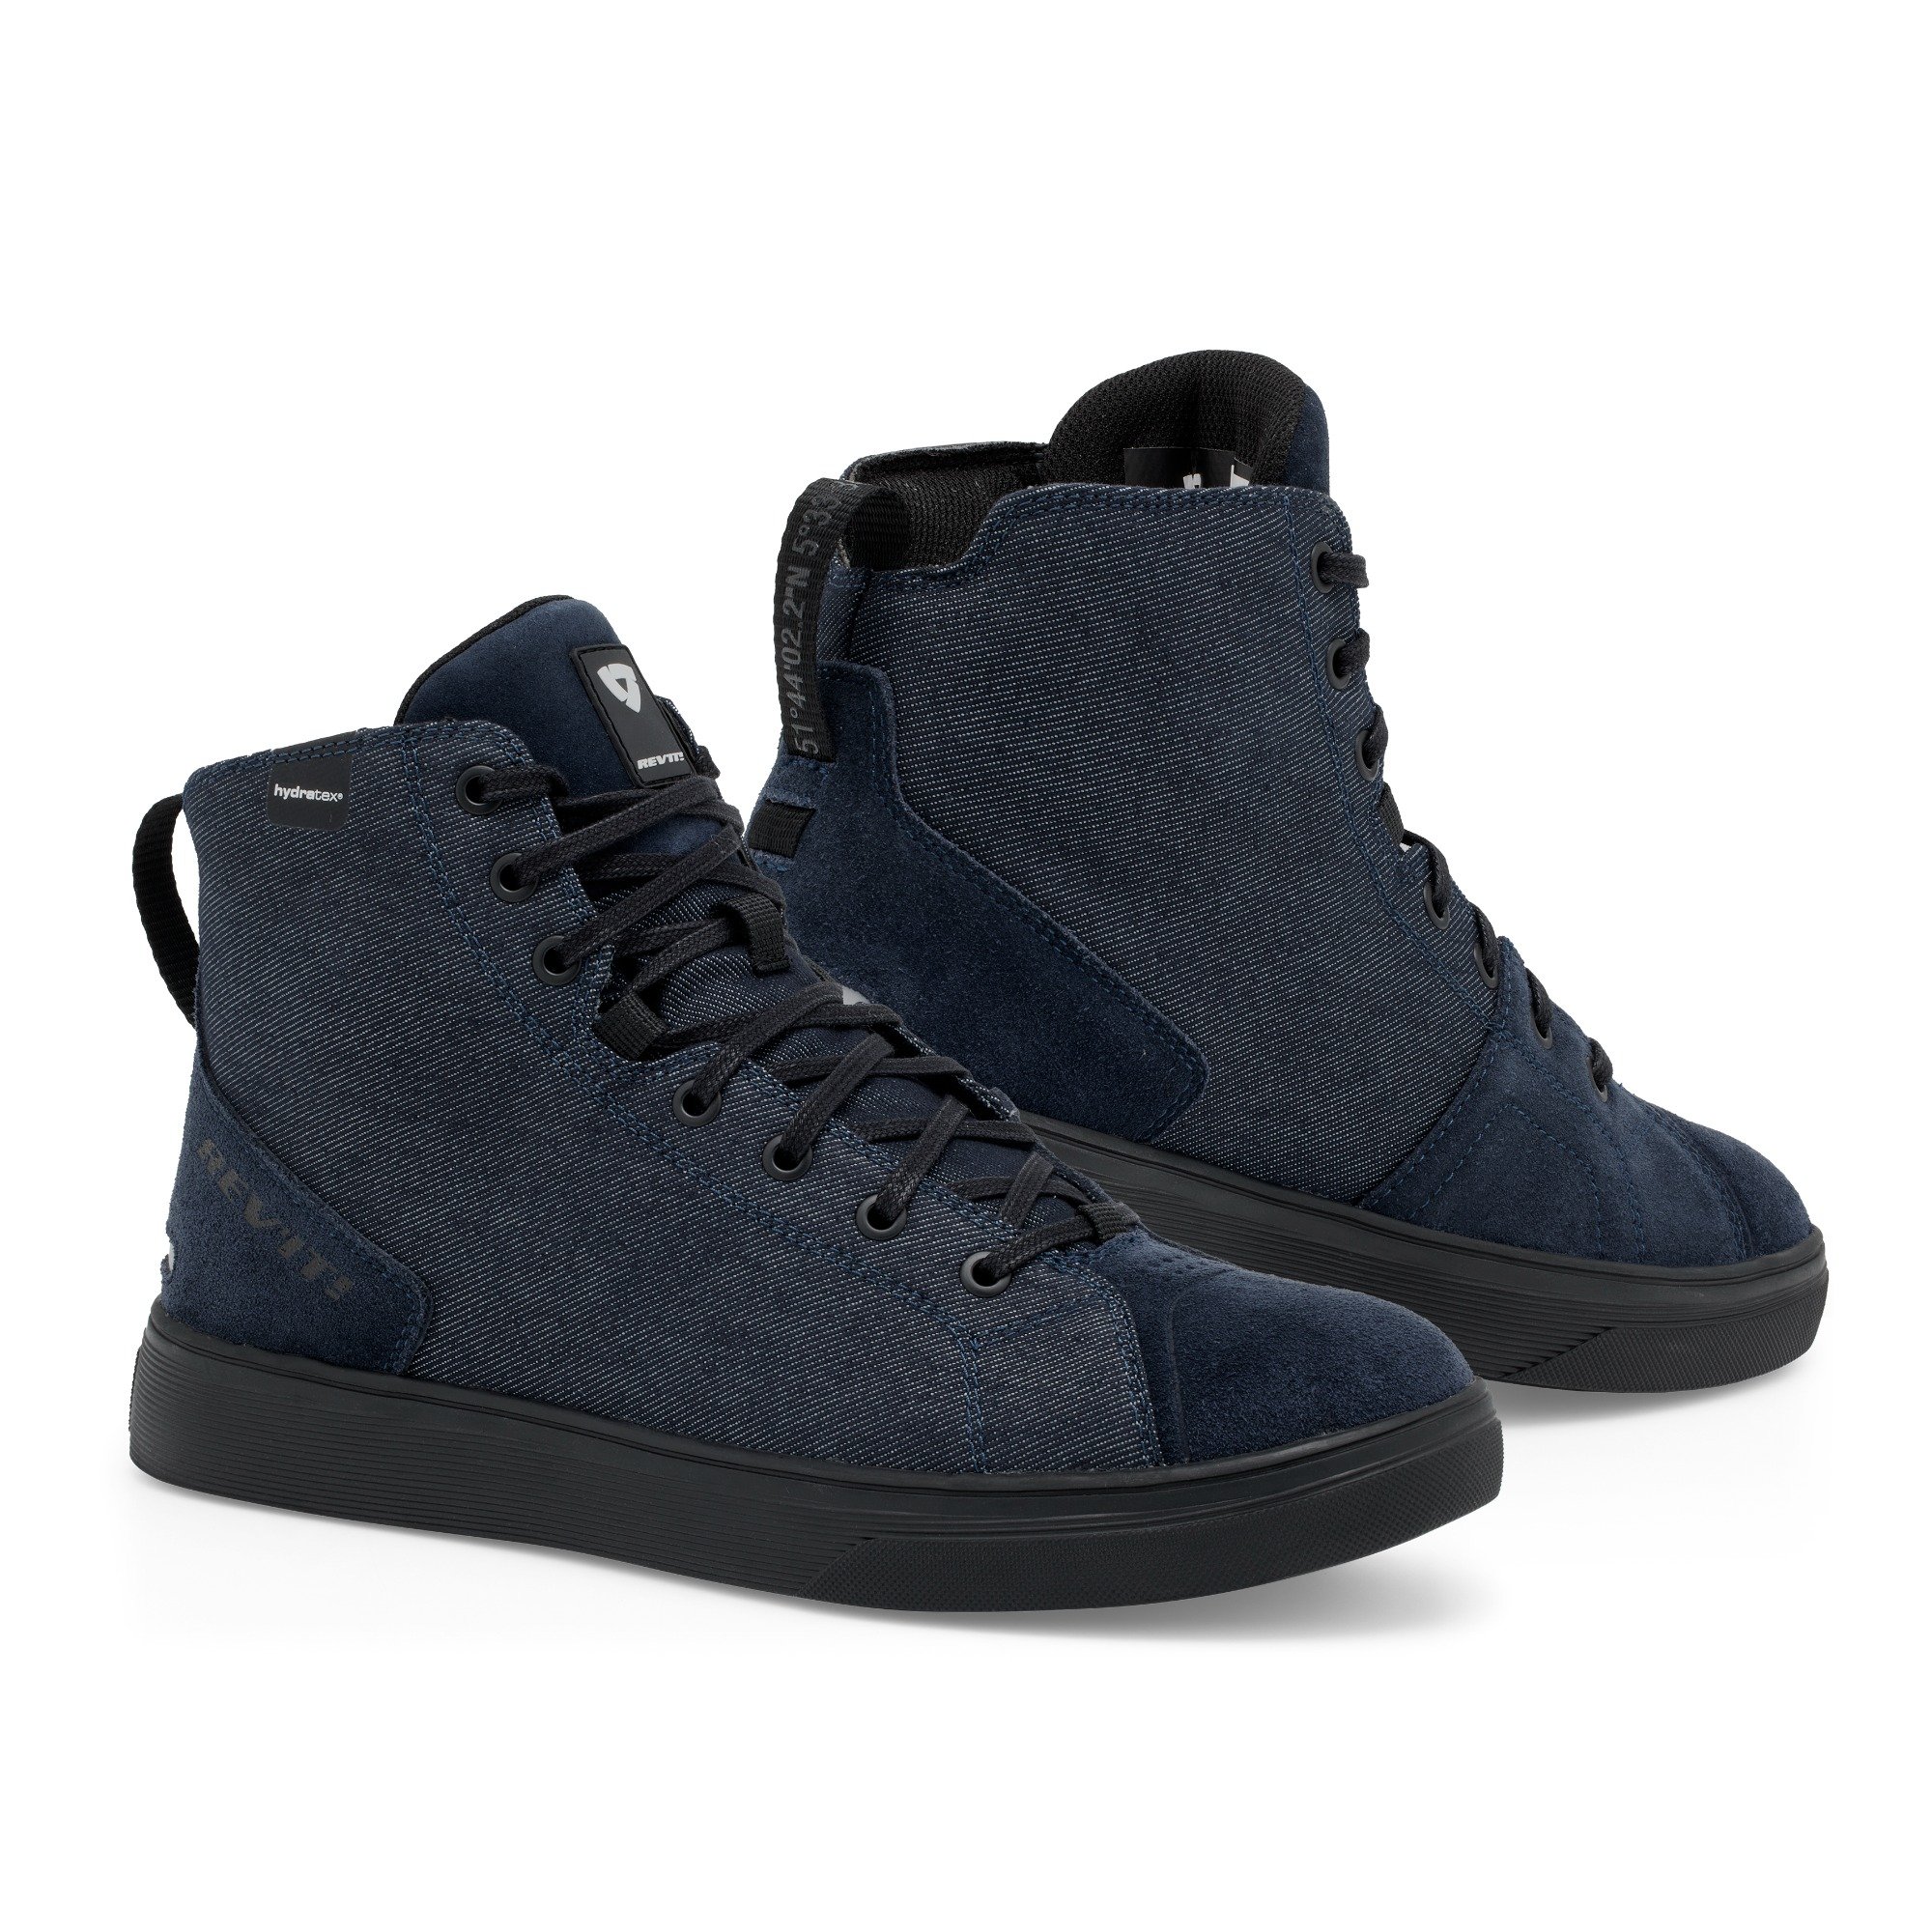 Image of REV'IT! Delta H2O Chaussures Foncé Bleu Noir Taille 46